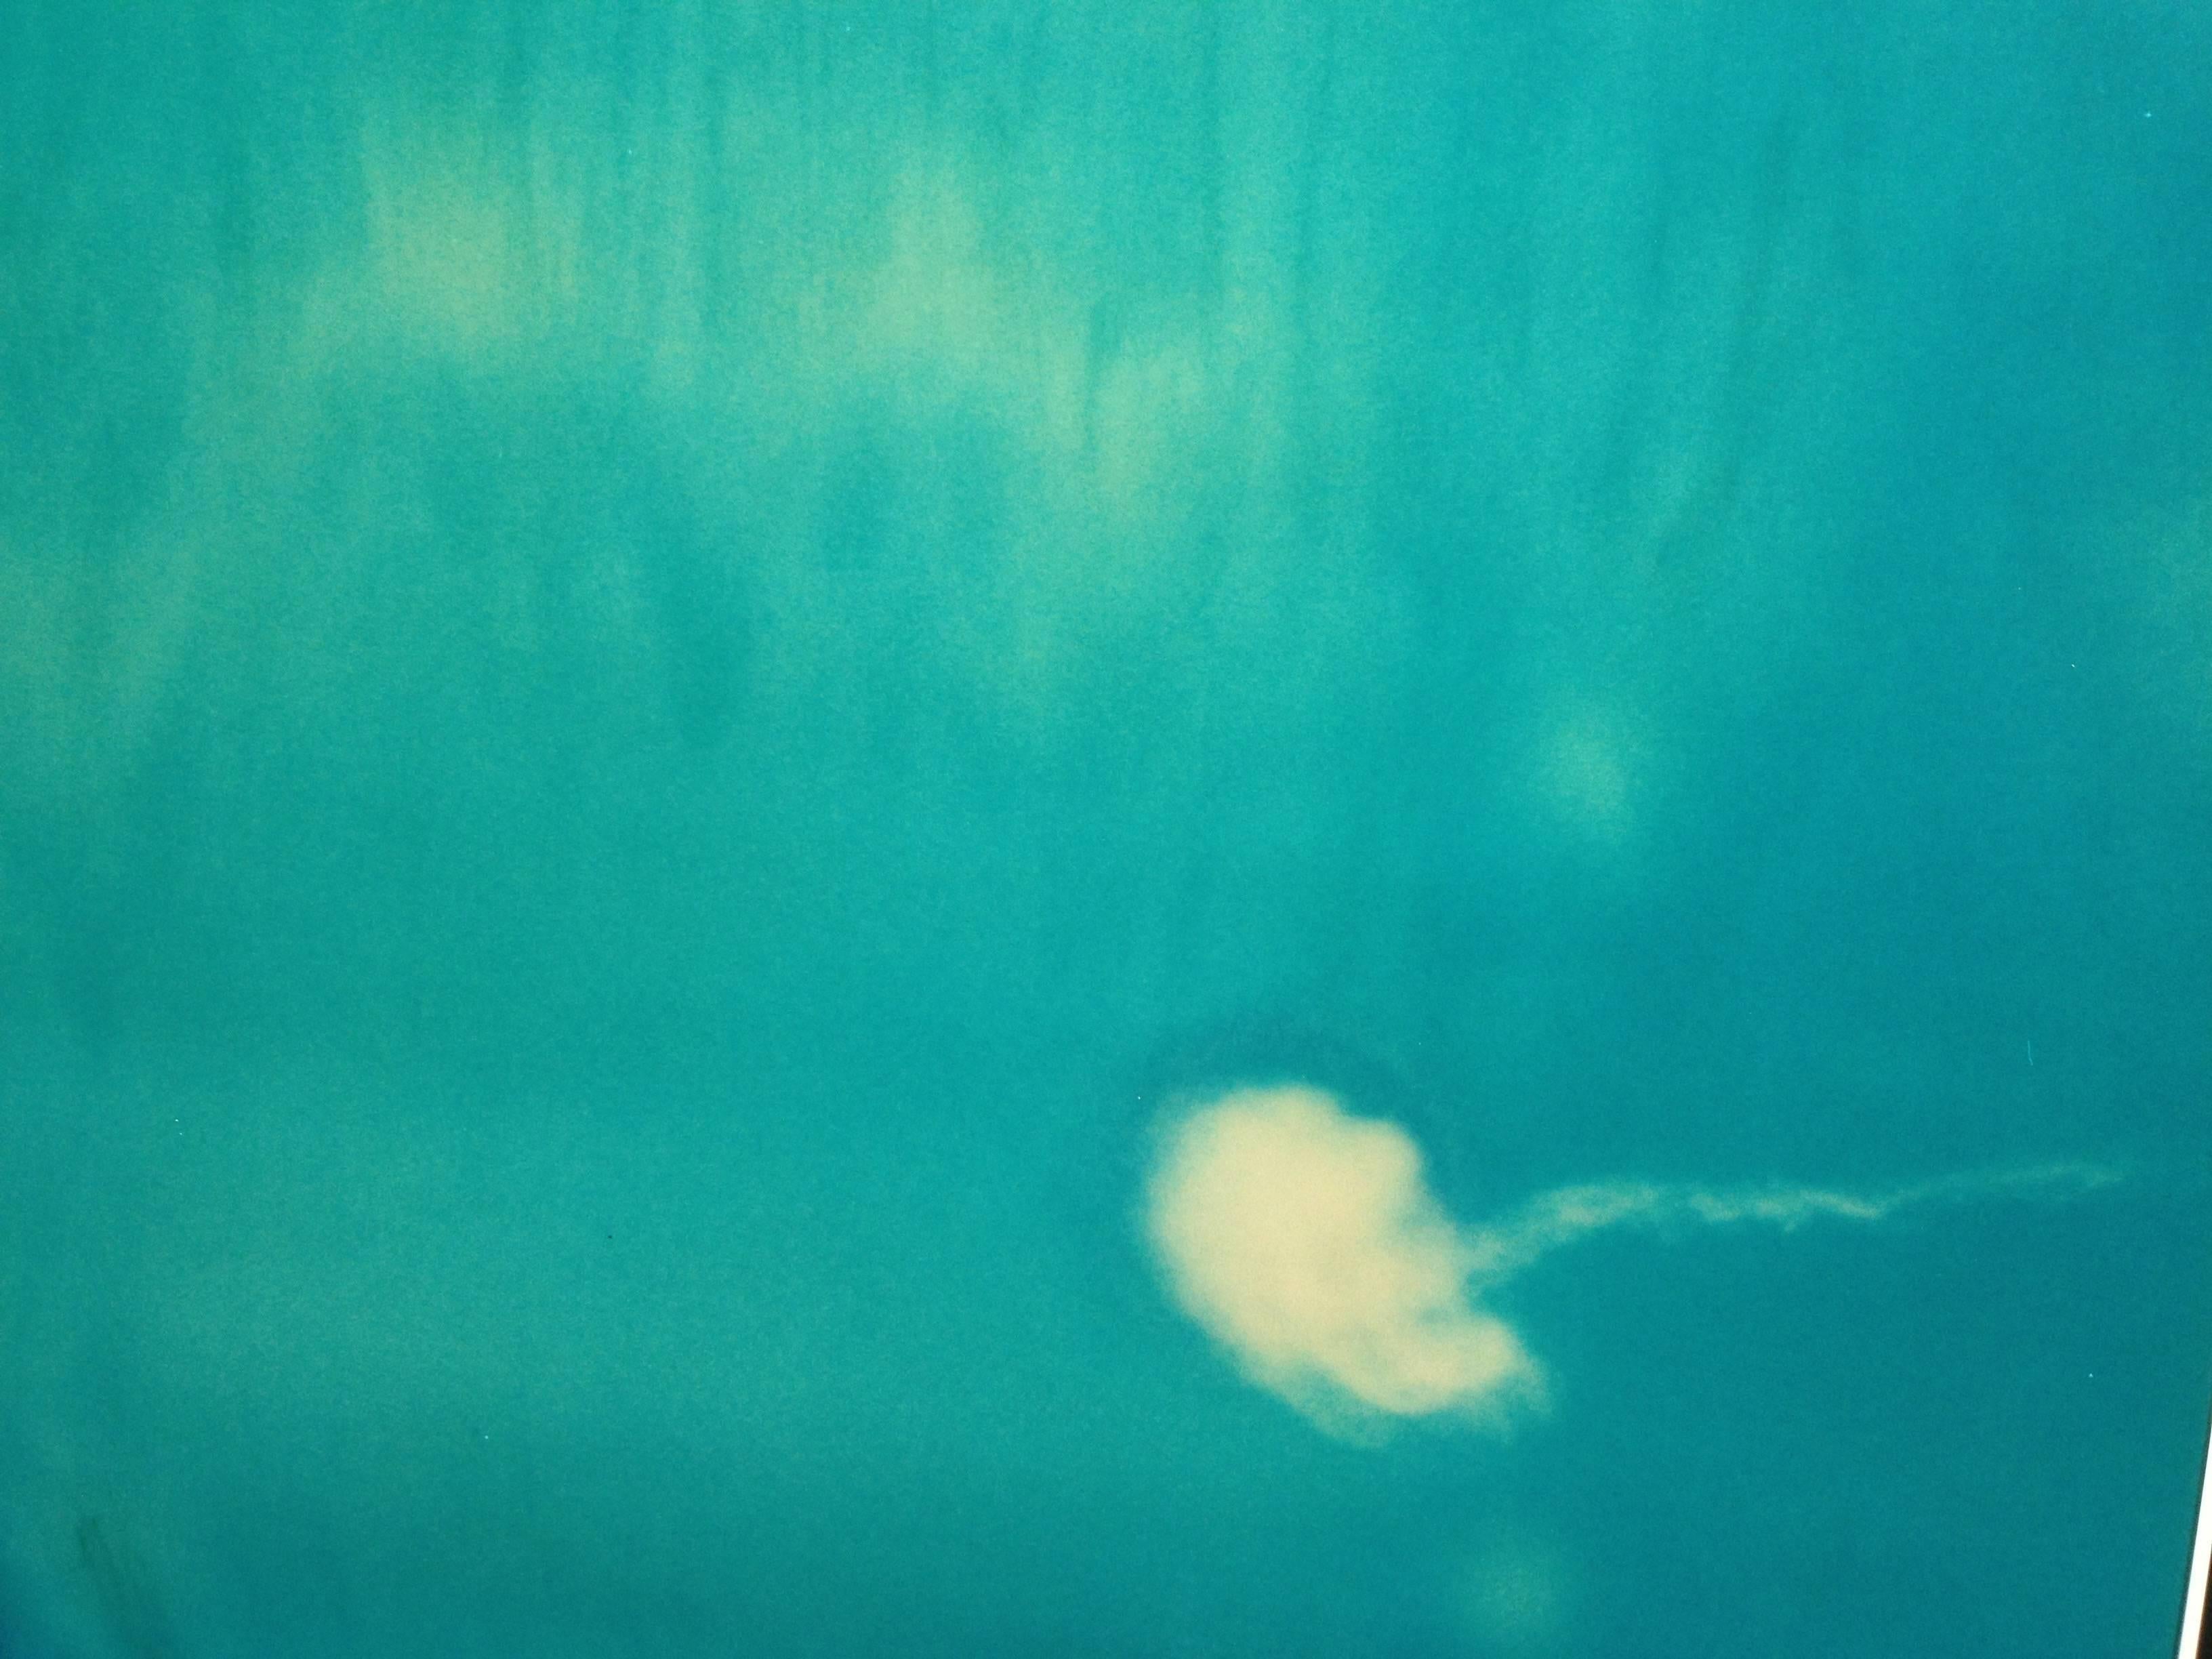 Henry and the Jelly Fish'(Stay) mit Ryan Gosling - 2006

48x46cm, 
Auflage: 10 Exemplare plus 2 Probedrucke.
Archiv-C-Print, basierend auf dem Polaroid. 
Unterschriftenlabel und Zertifikat. 
Künstler Invenroy #5501. 
Nicht montiert.